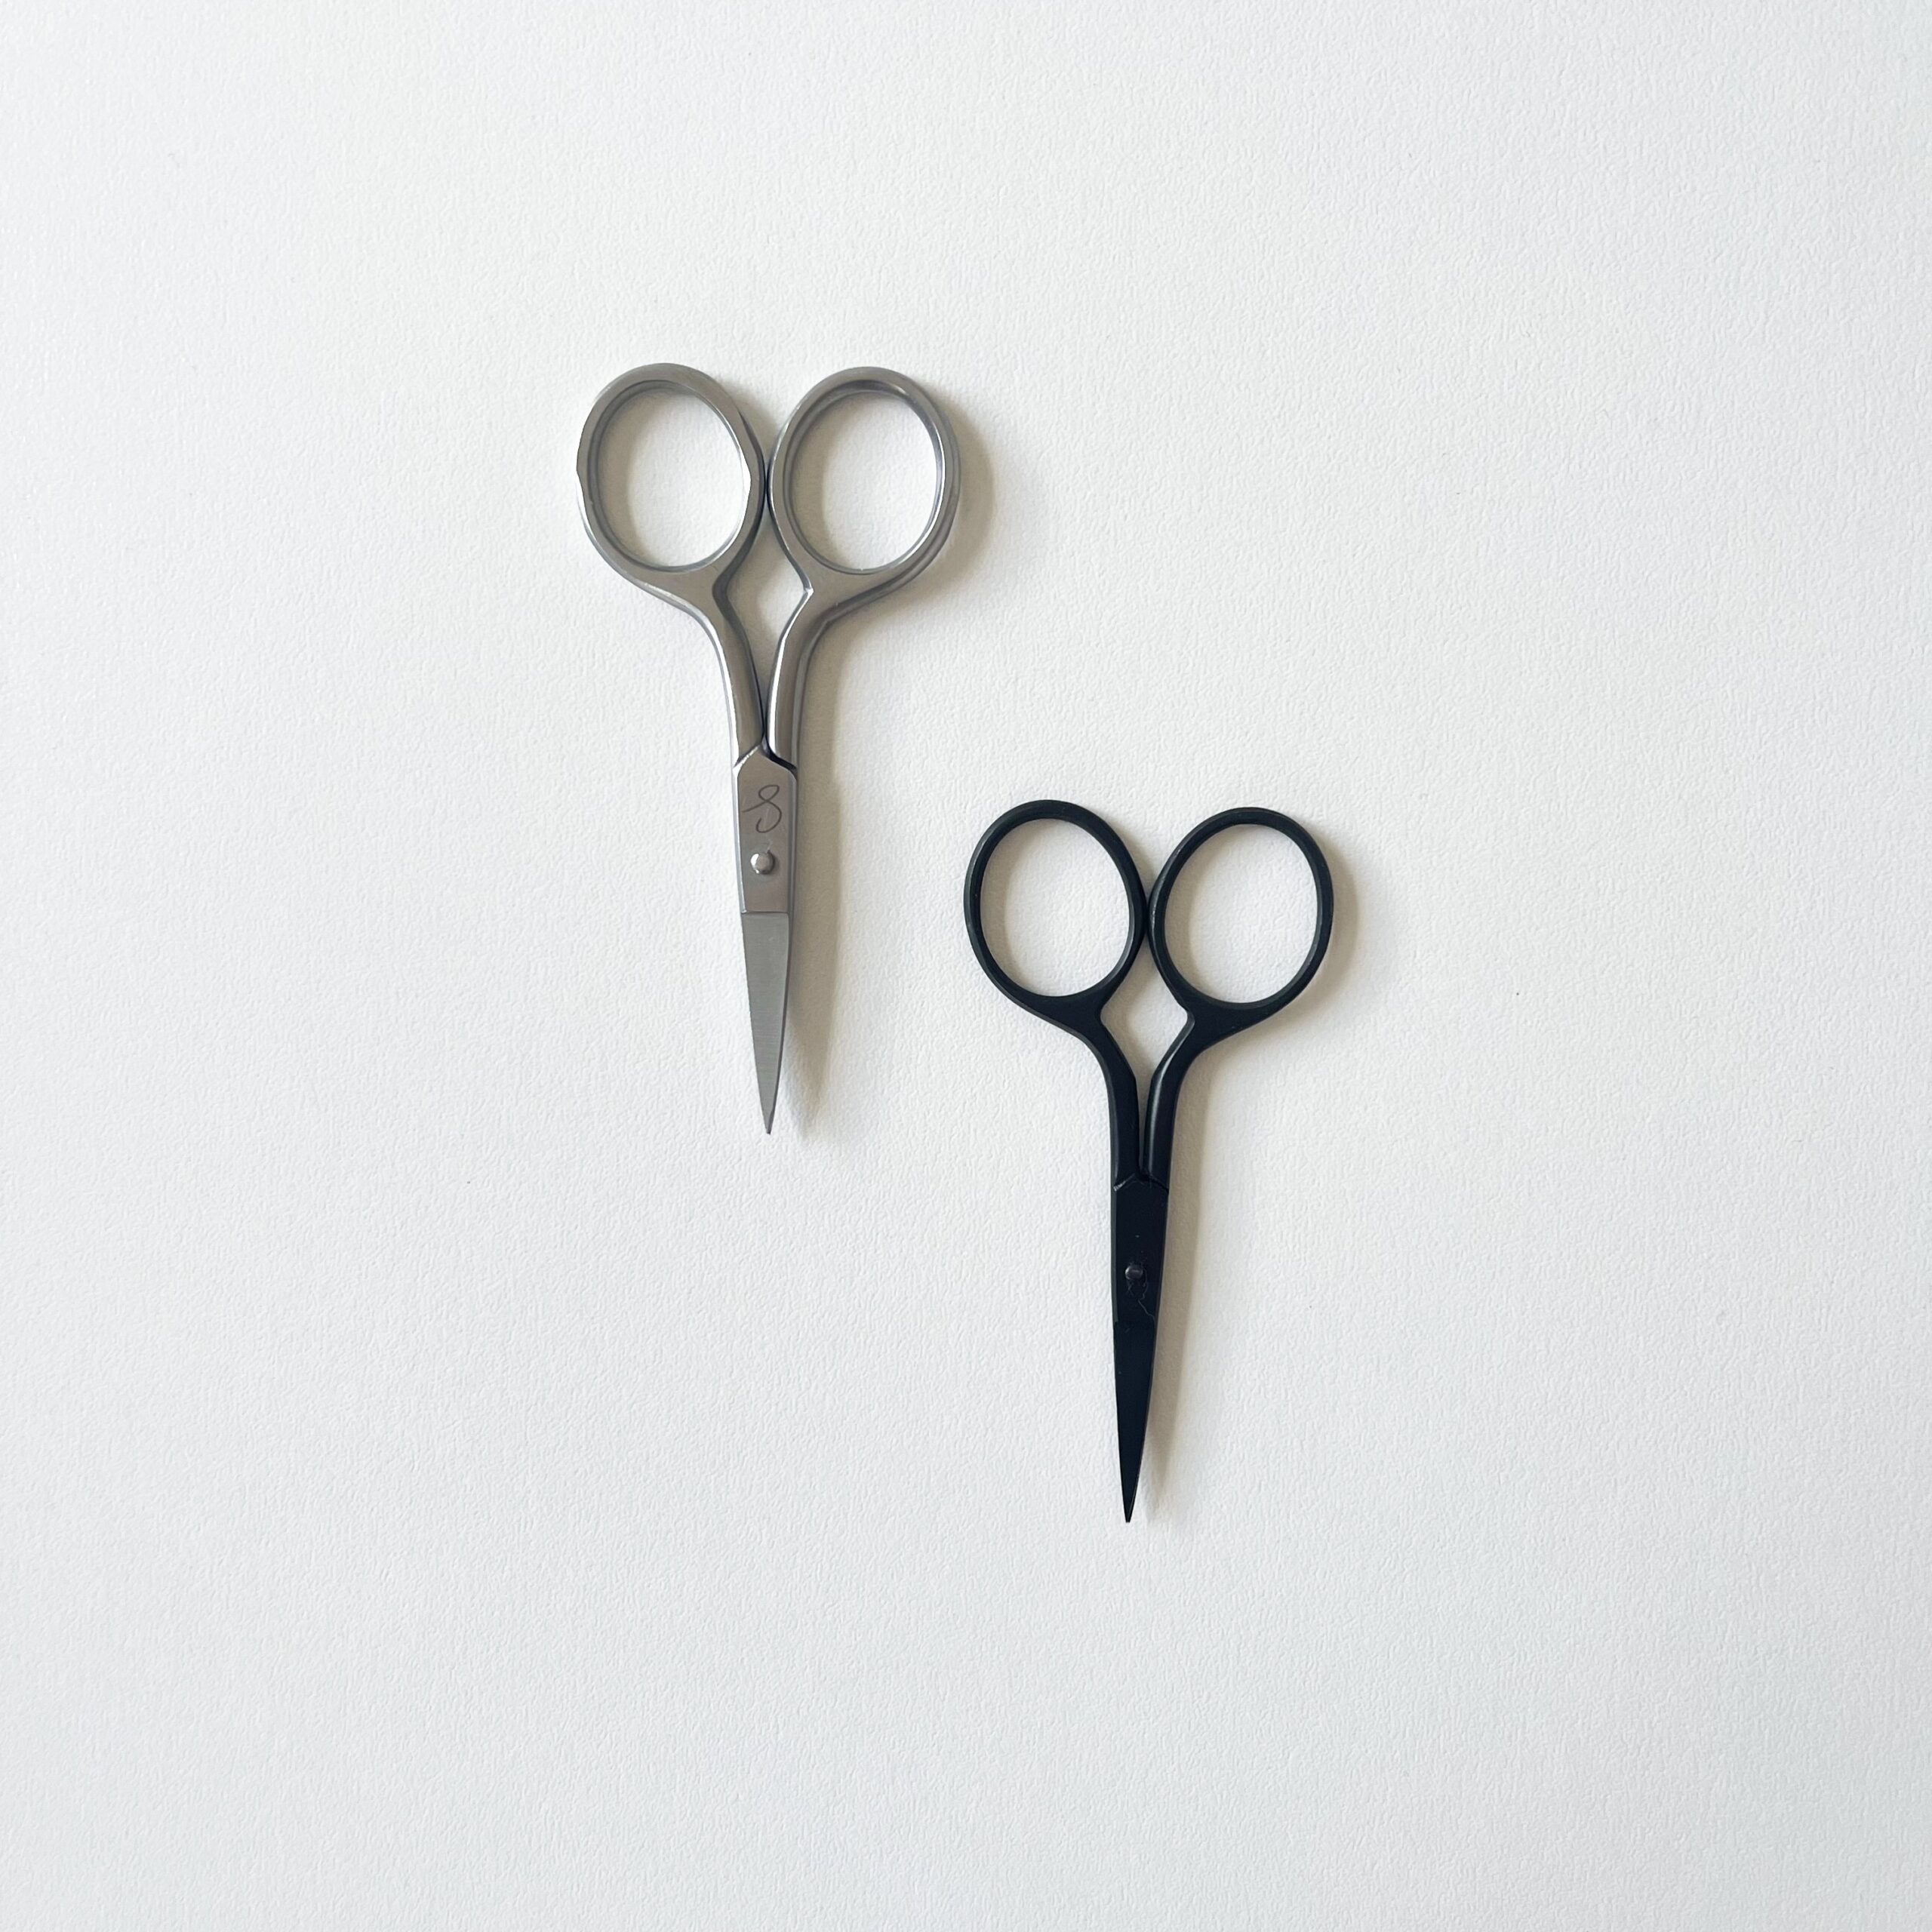 Small Thread Scissors – The Maker Studio